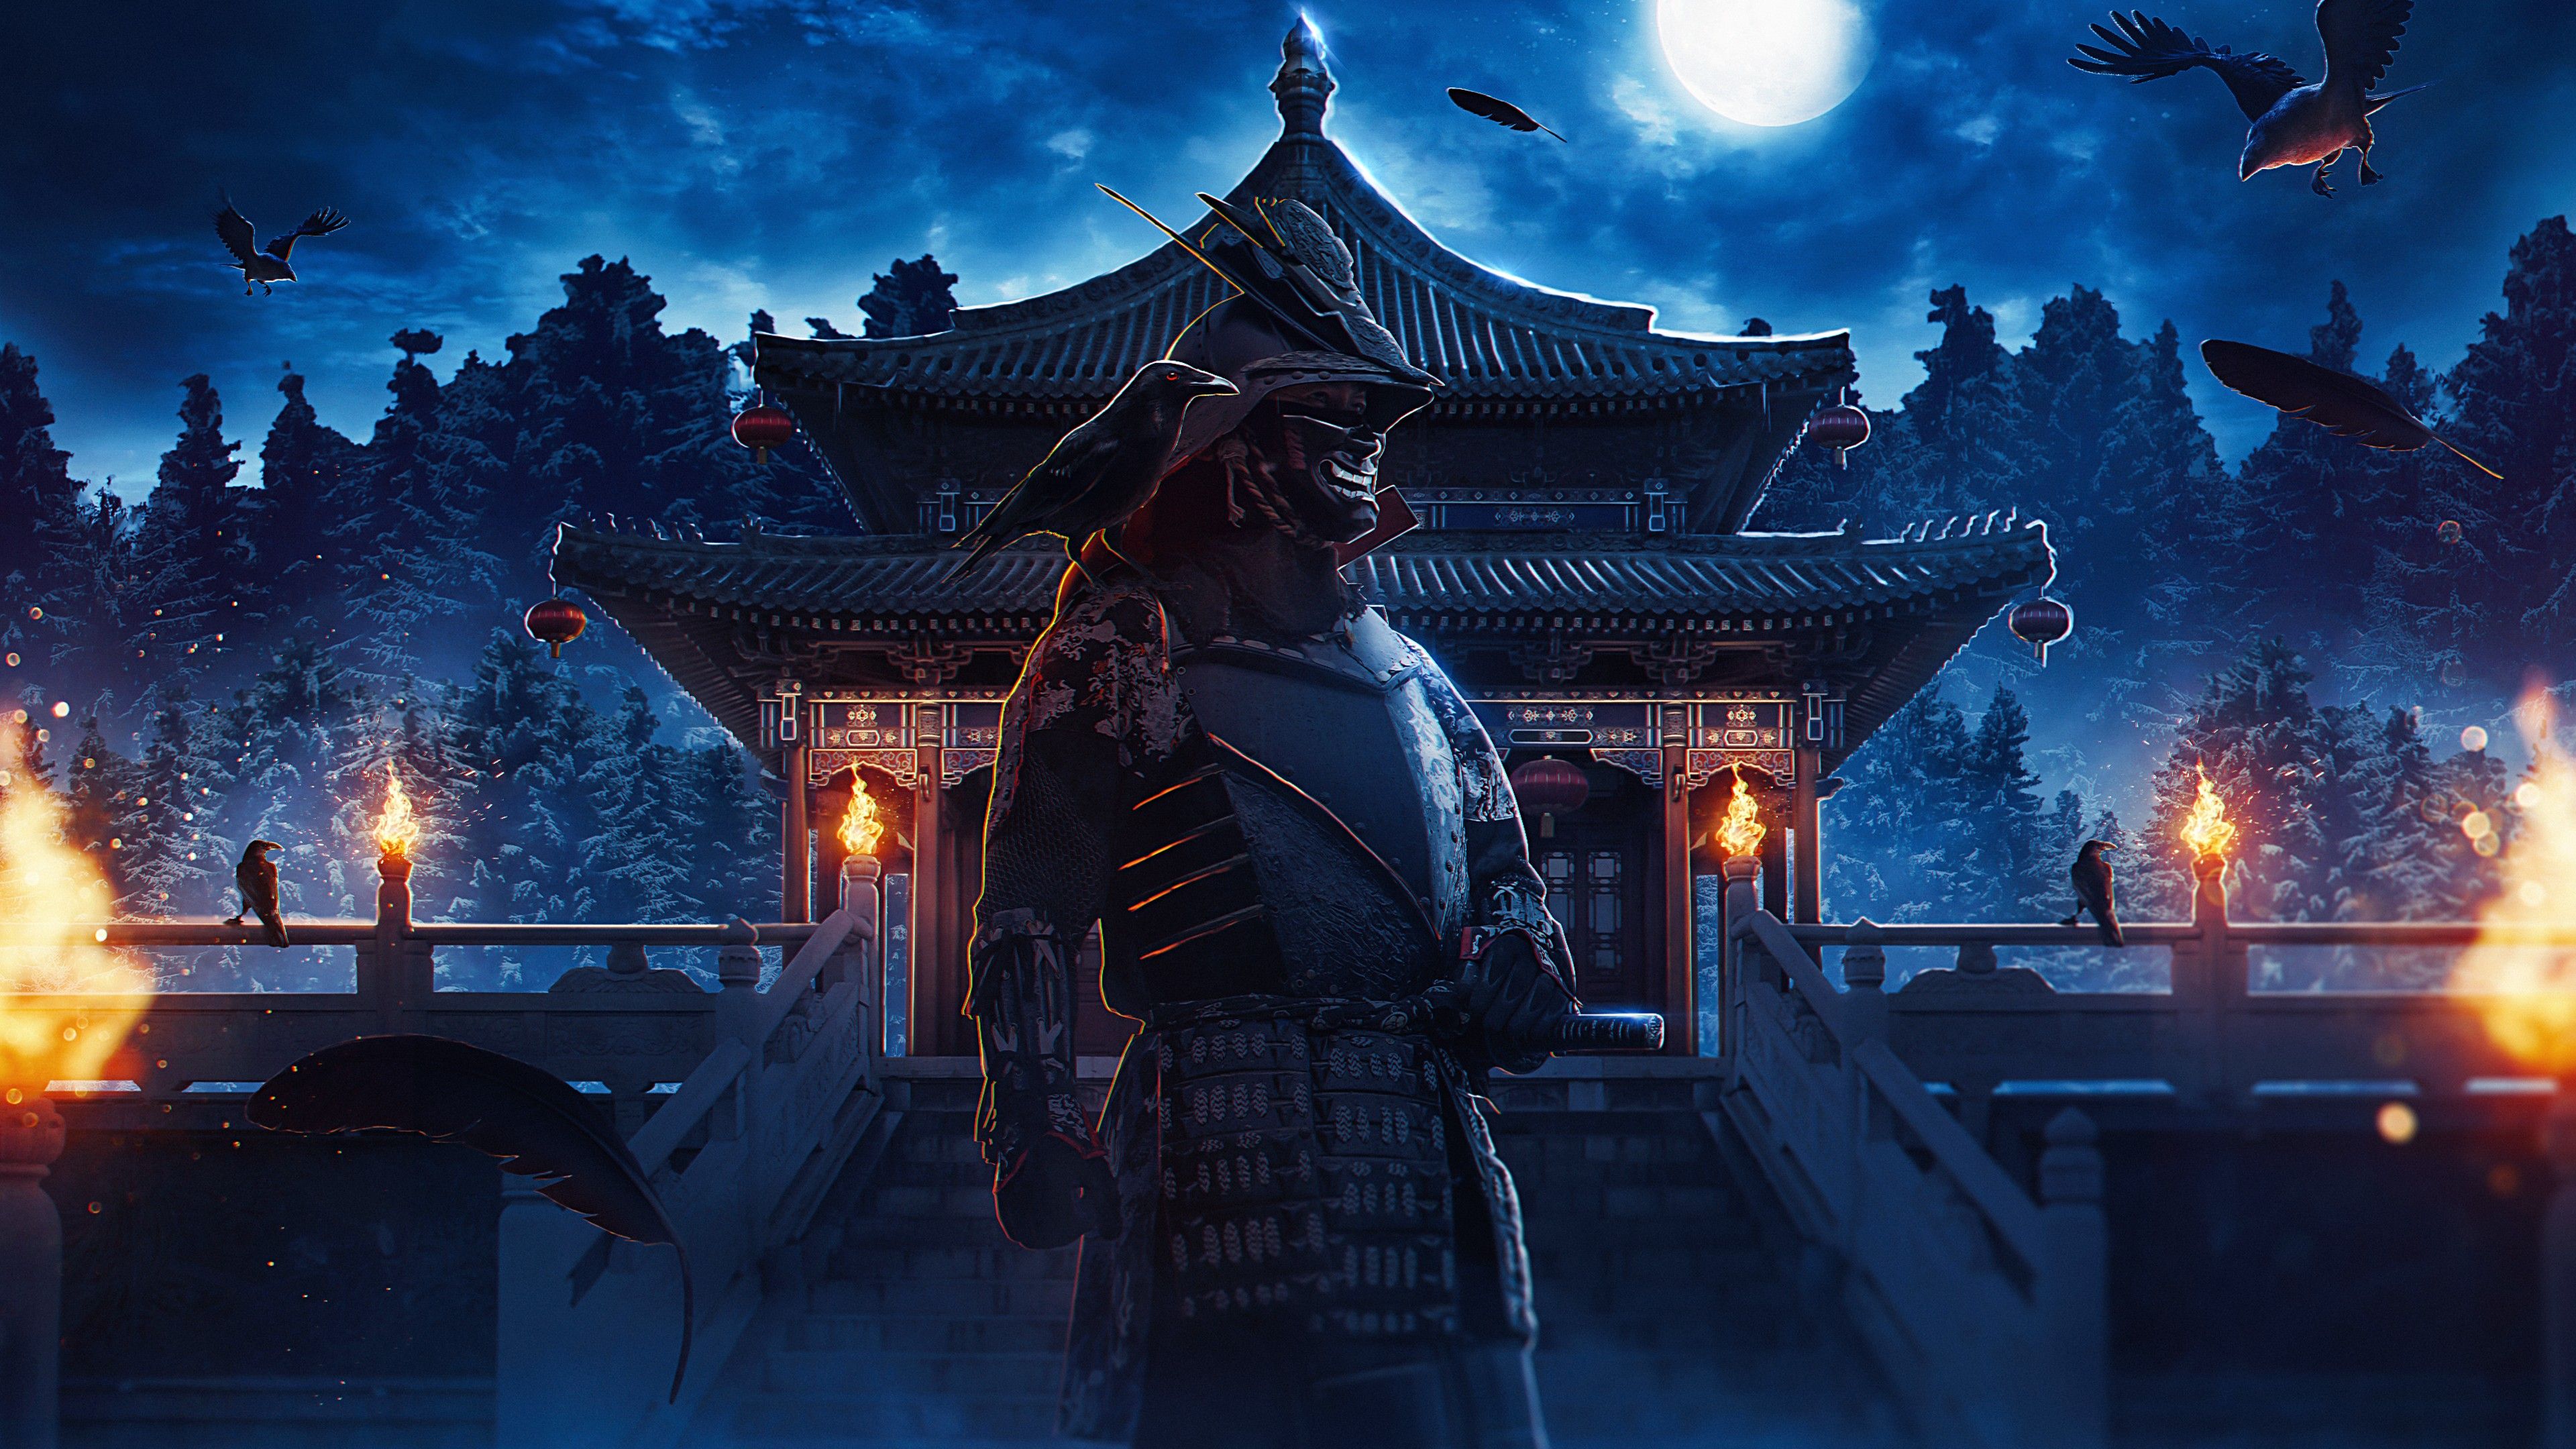 Samurai - những chiến binh thông thạo kỹ thuật chiến đấu và có nhiều truyền thống lịch sử đặc biệt. Nếu bạn yêu thích Samurai và mong muốn khám phá thêm về văn hóa nhật bản, thì hình ảnh liên quan sẽ mang đến cho bạn nhiều điều thú vị.